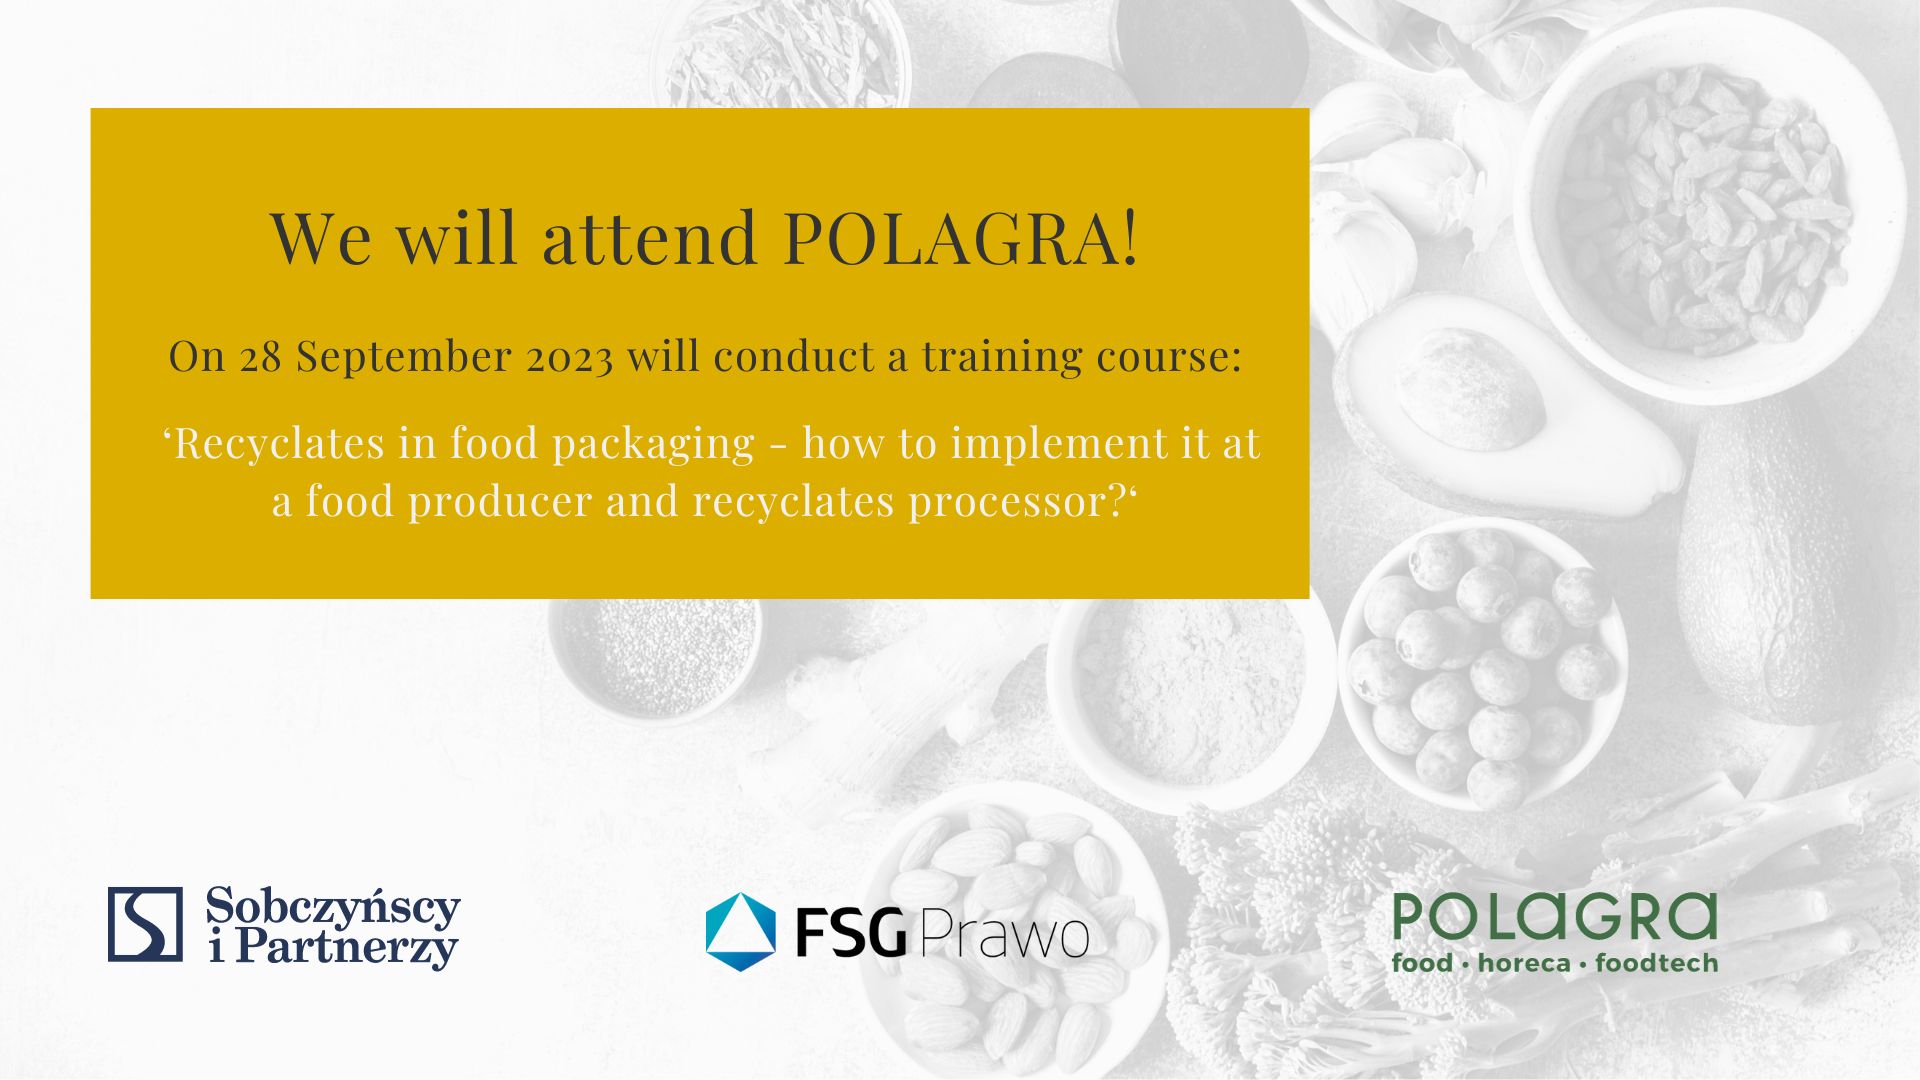 Select Sobczyńscy i Partnerzy | FSG Prawo is a partner of POLAGRA 2023 trade fair	
Sobczyńscy i Partnerzy | FSG Prawo is a partner of POLAGRA 2023 trade fair